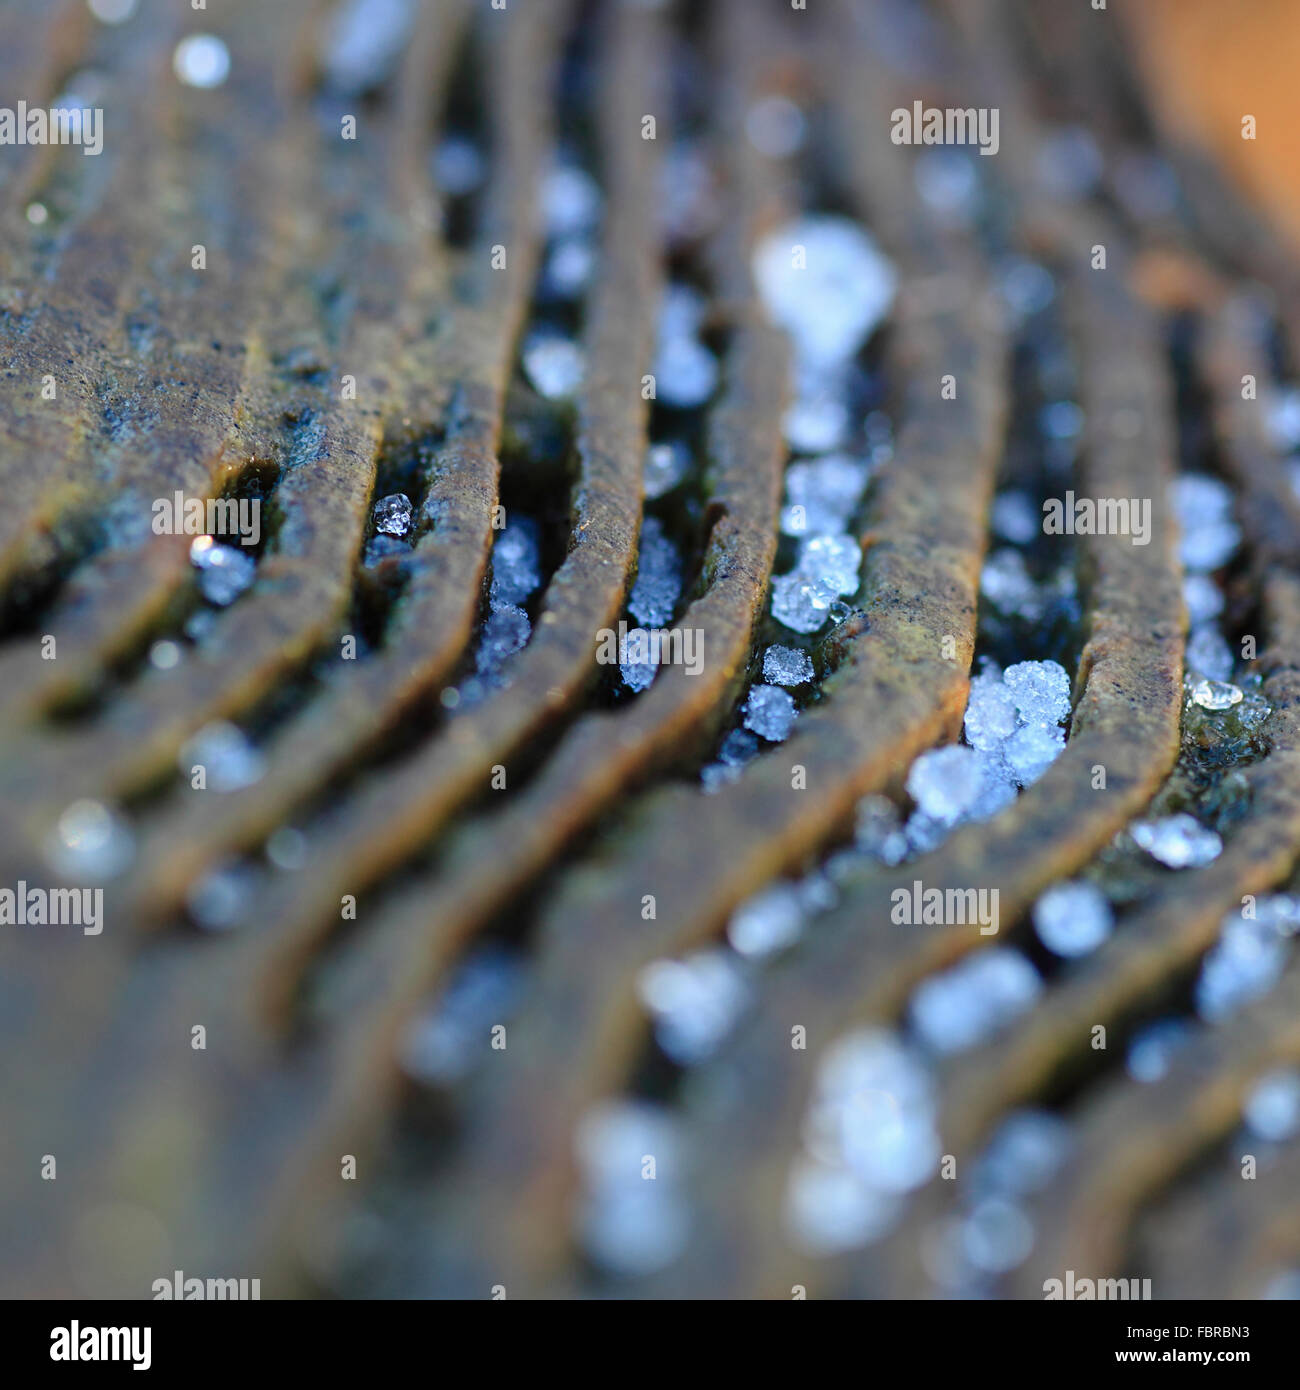 Les gouttelettes d'eau gelée dans les rainures des joints toriques d'un arbre. Banque D'Images